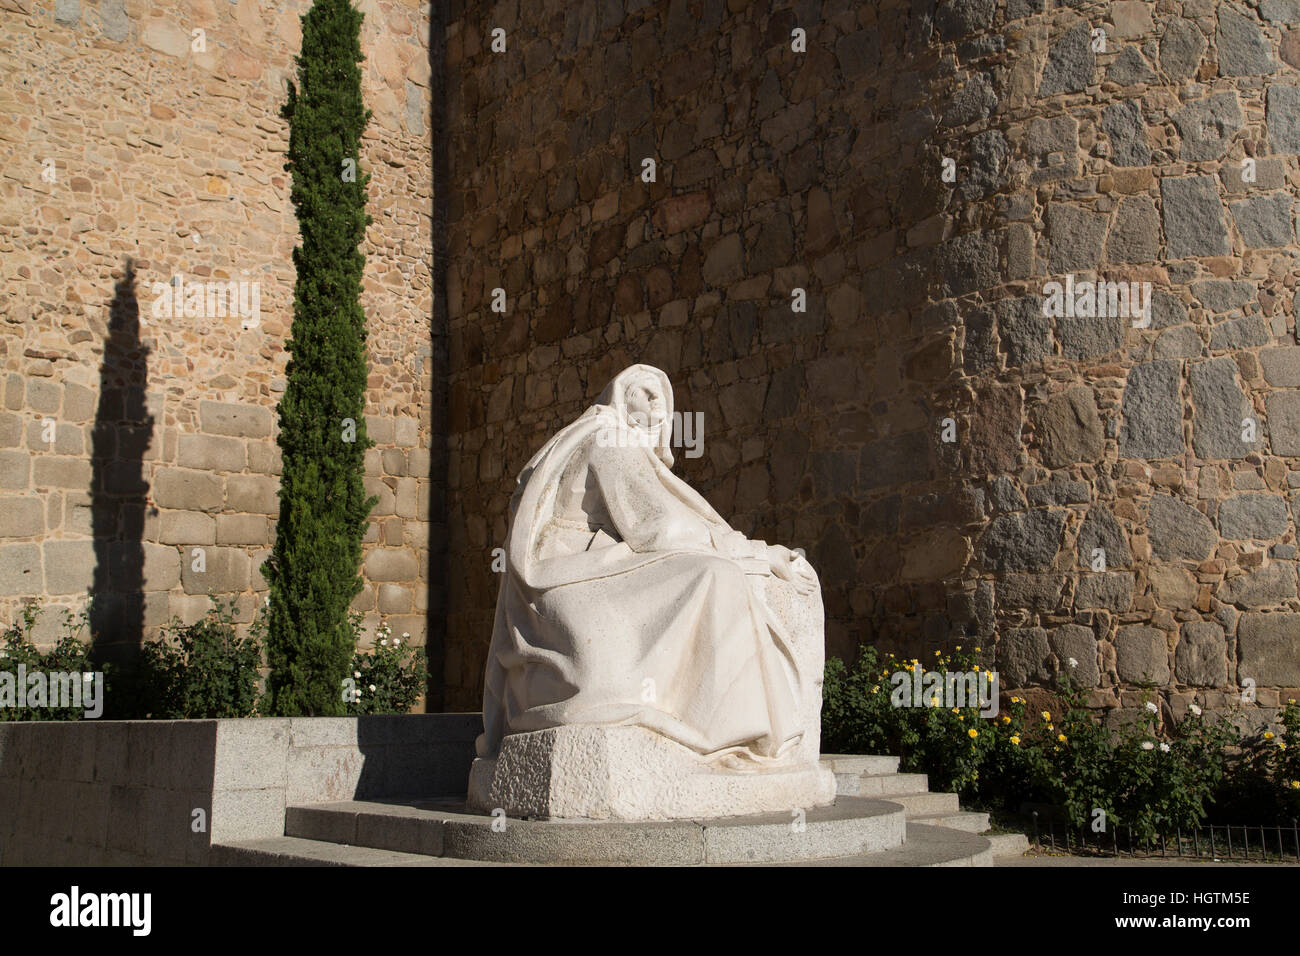 Statue de sainte Thérèse de Jésus, Avila, UNESCO World Heritage Site, Espagne Banque D'Images